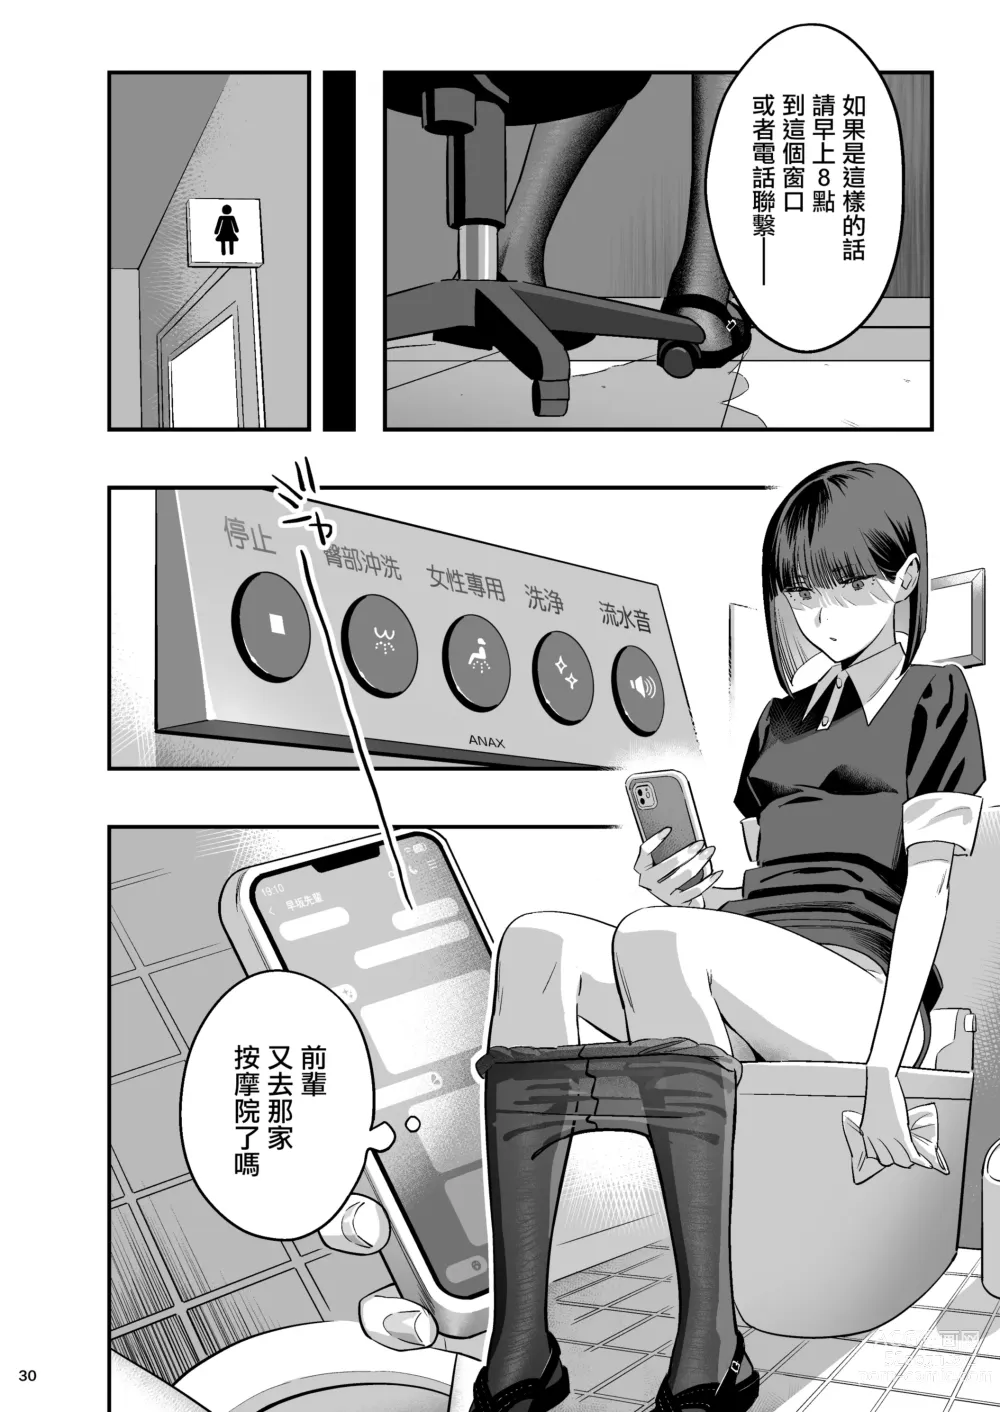 Page 29 of doujinshi Watashi ga Saki ni Suki datta no ni Seitai.